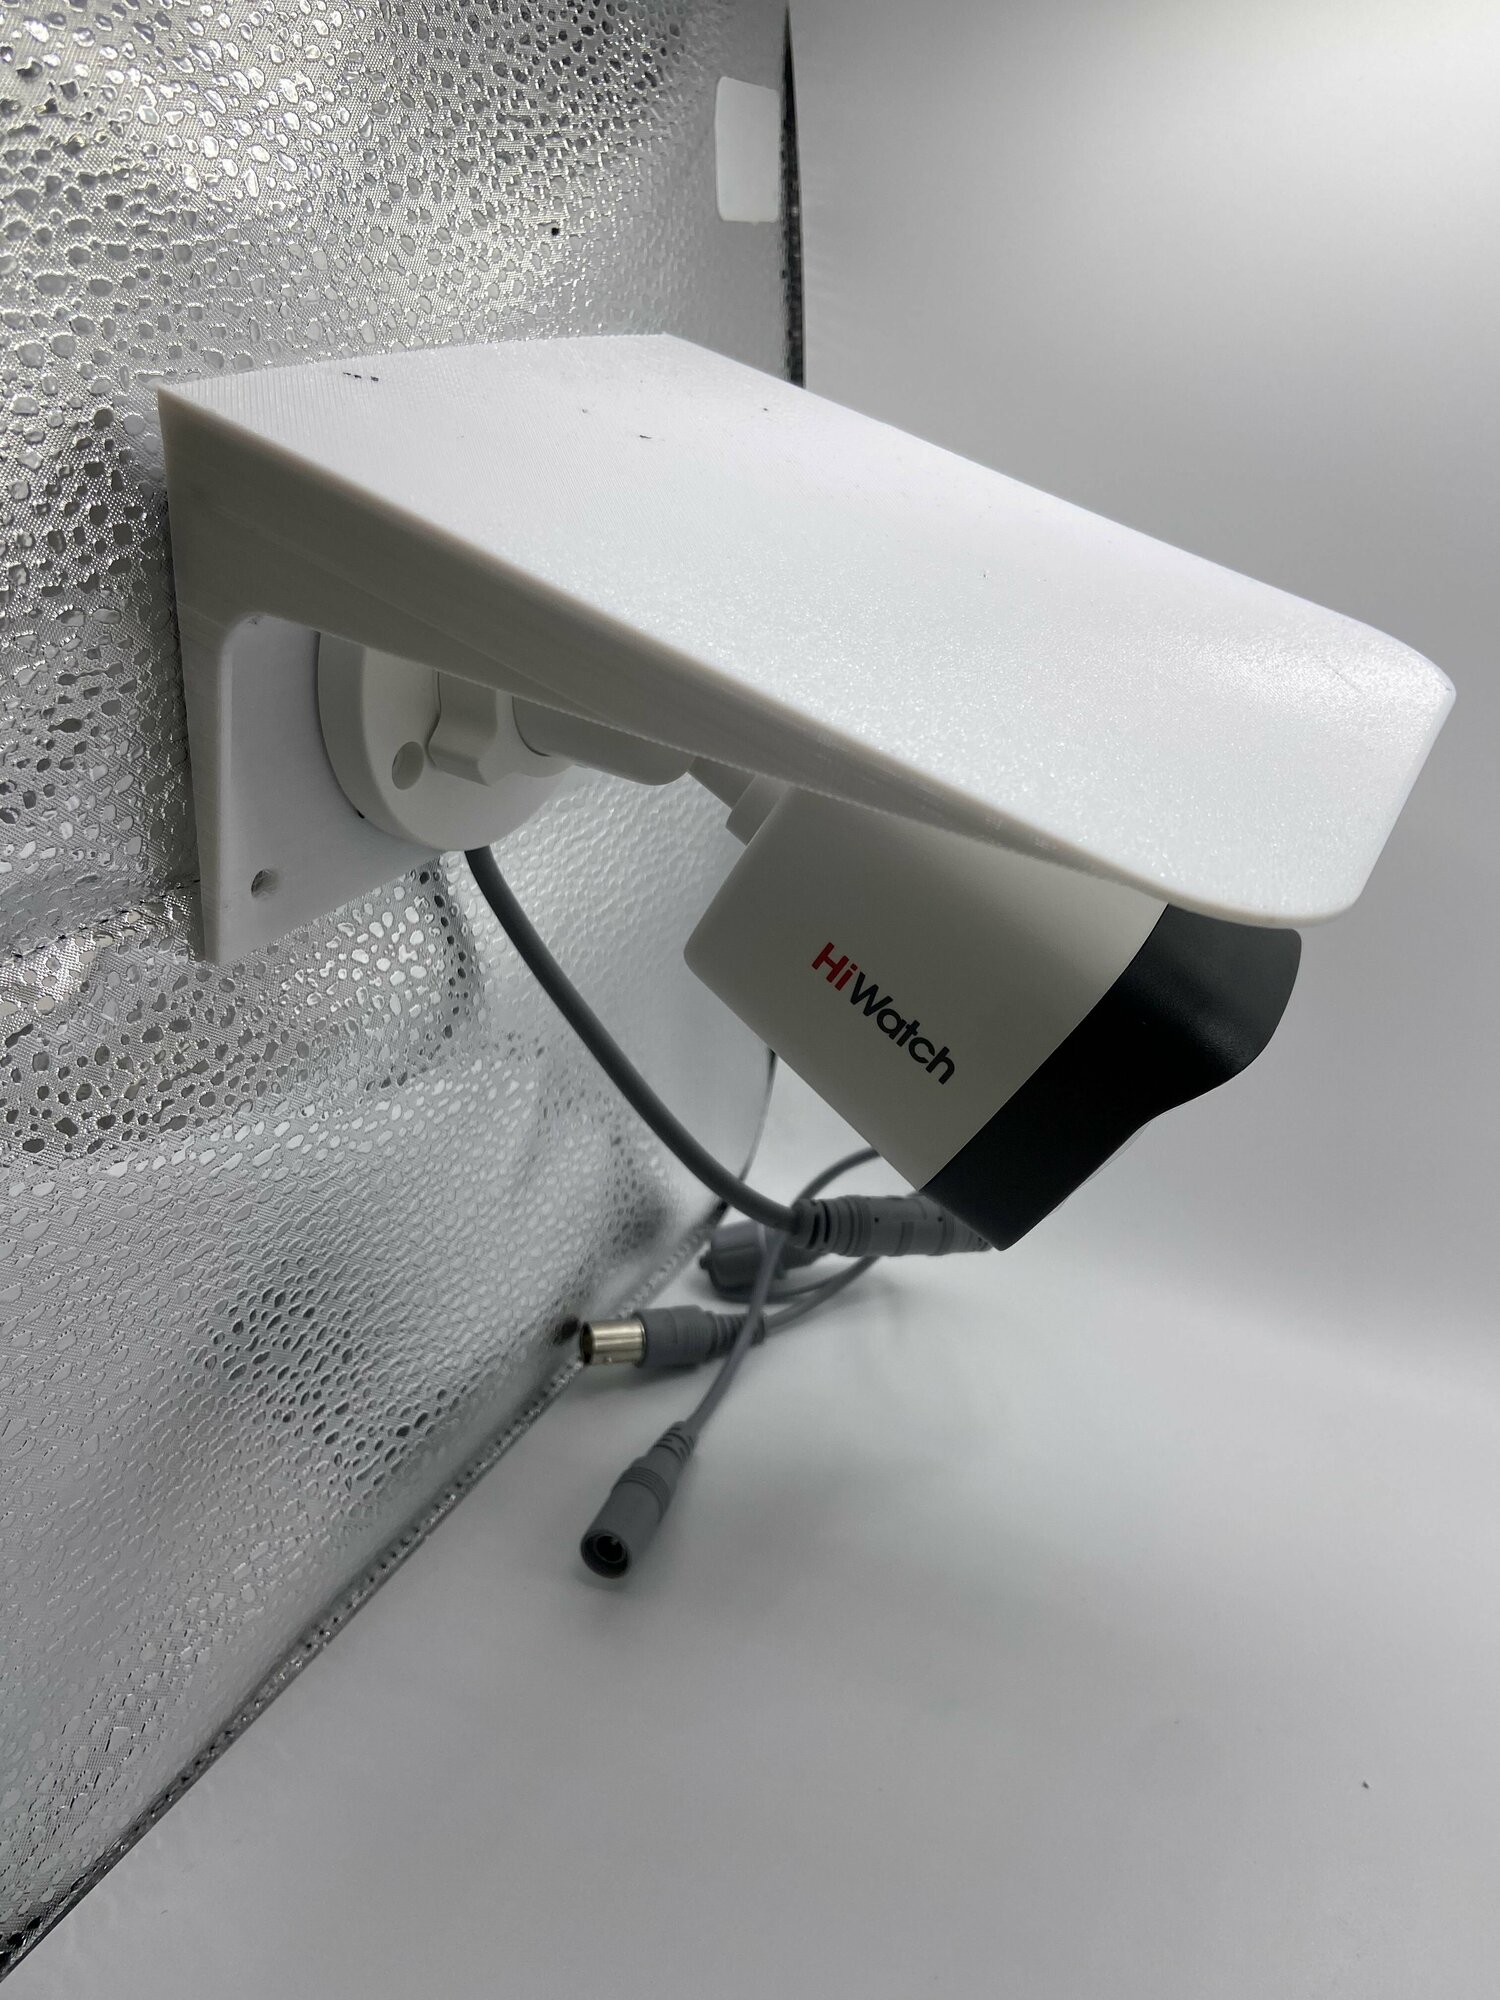 Защитный козырек для камеры (светильника) видеонаблюдения HIKVISION HIWATCH DAHUA плоский (белый) защита камеры от дождя льда снега